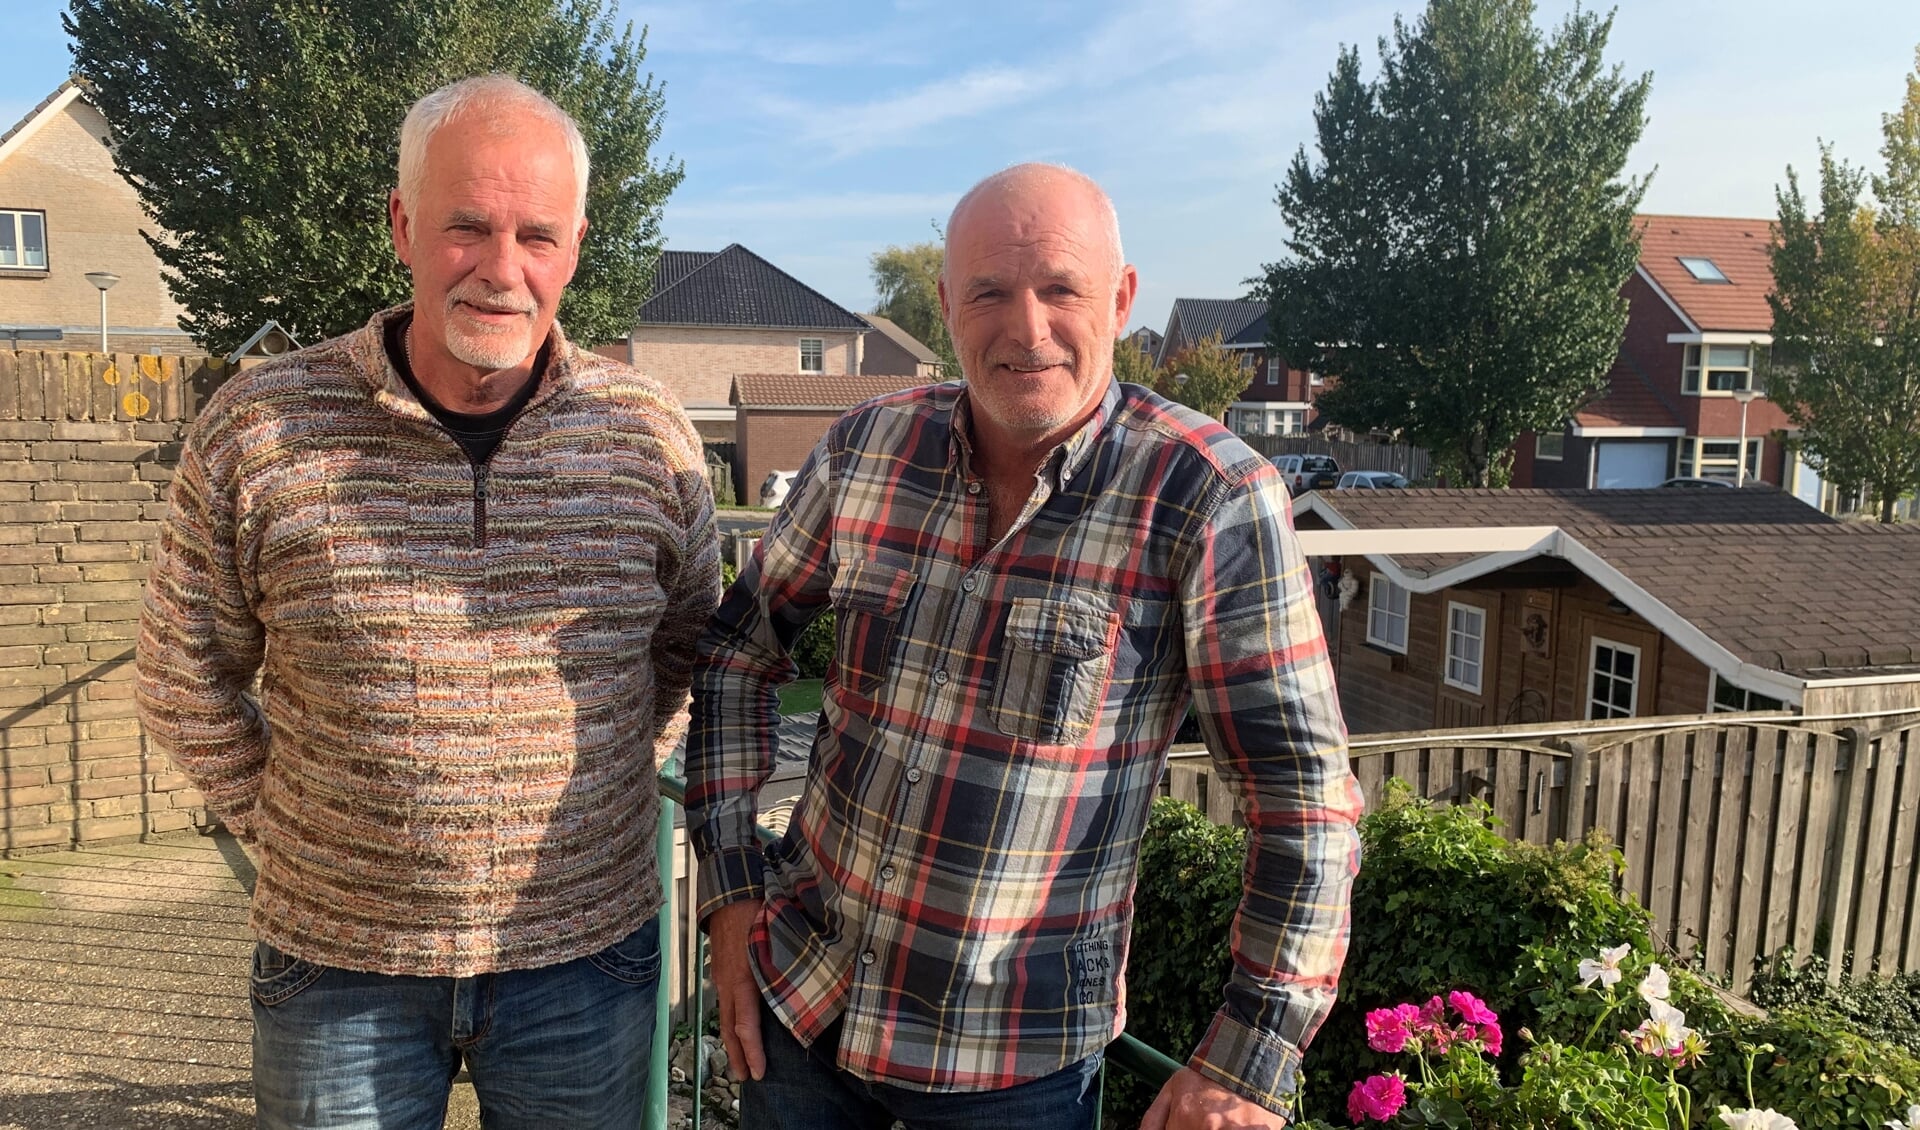 De broers Bram (rechts) en Henk Sulkers op het balkon van de ouderlijke woning, waar Bram en zijn vrouw Elly nu wonen. ,,We gaan niet achter de geraniums zitten'', lachen ze.